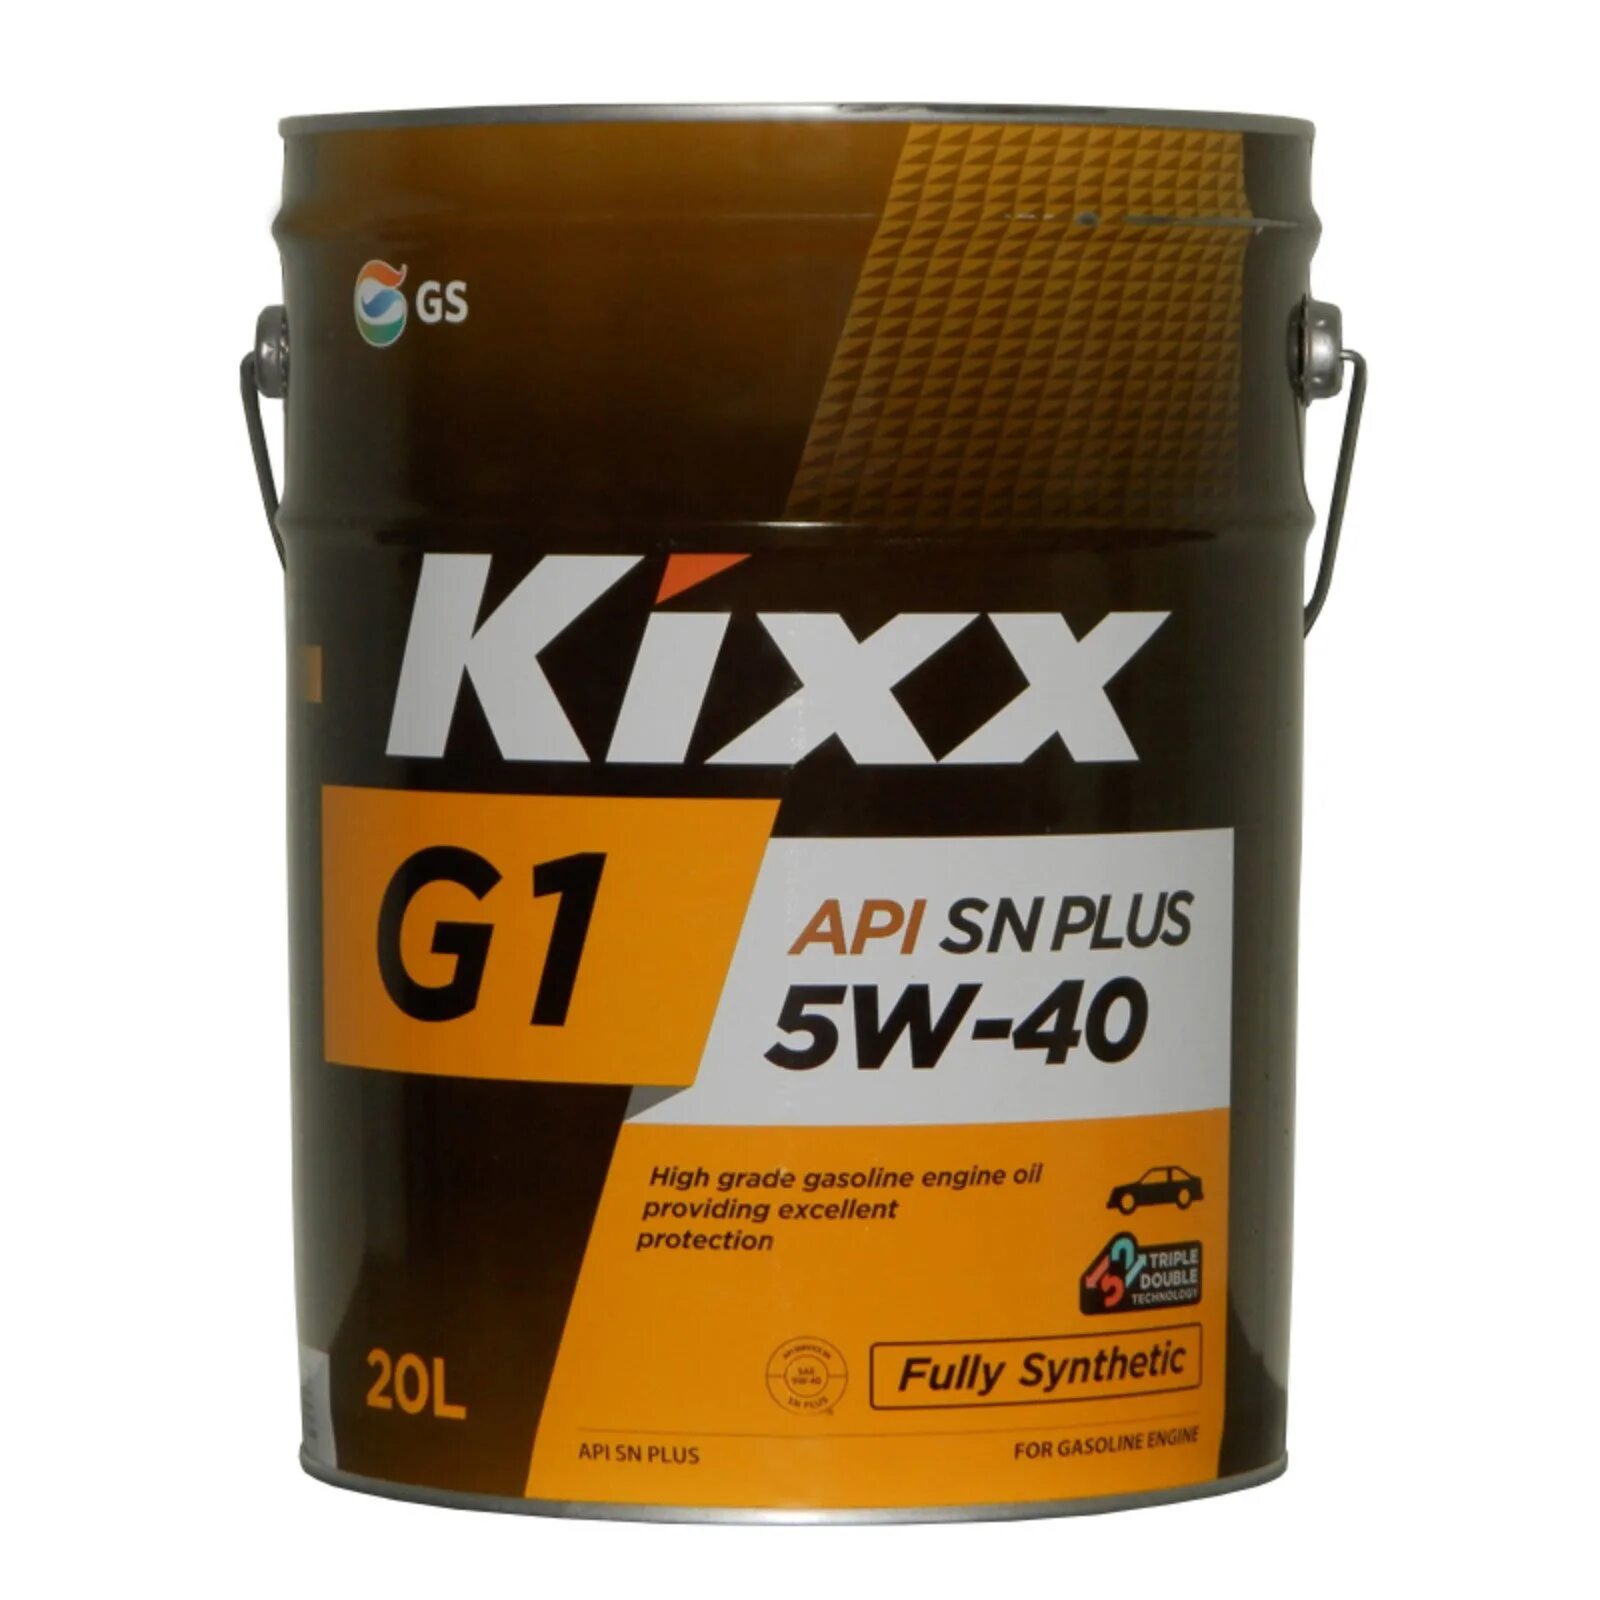 Синта 20. Kixx g1 SN Plus 5w-40. Kixx g1 5w-40. Kixx g1 5w-40 SN Plus 4 л. Kixx g1 SN Plus 5w40 4л синт.